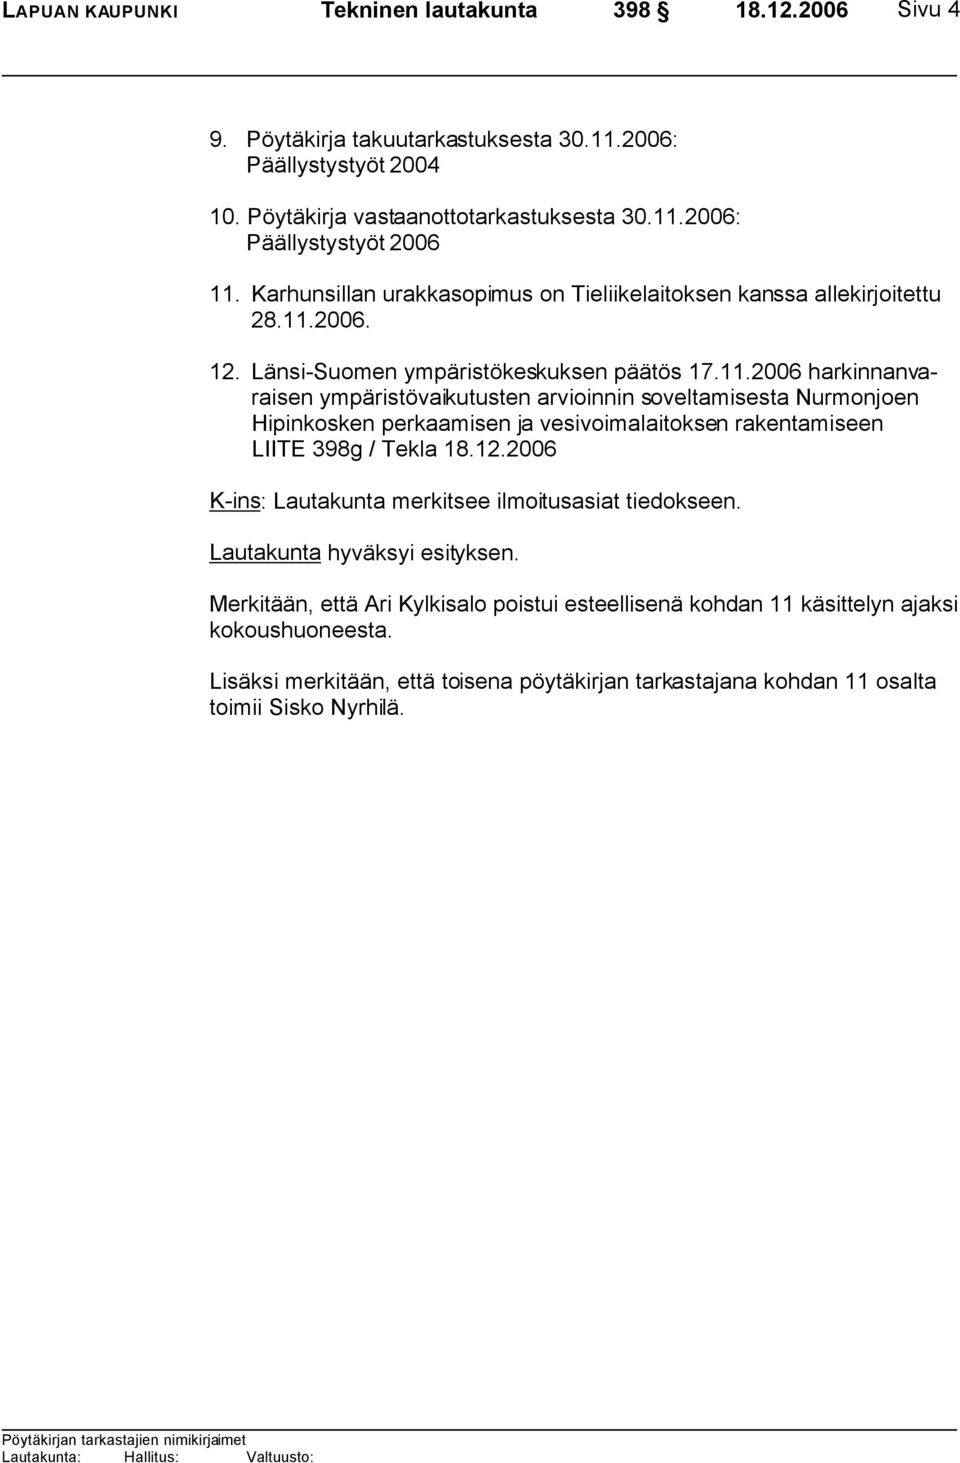 2006. 12. Länsi-Suomen ympäristökeskuksen päätös 17.11.